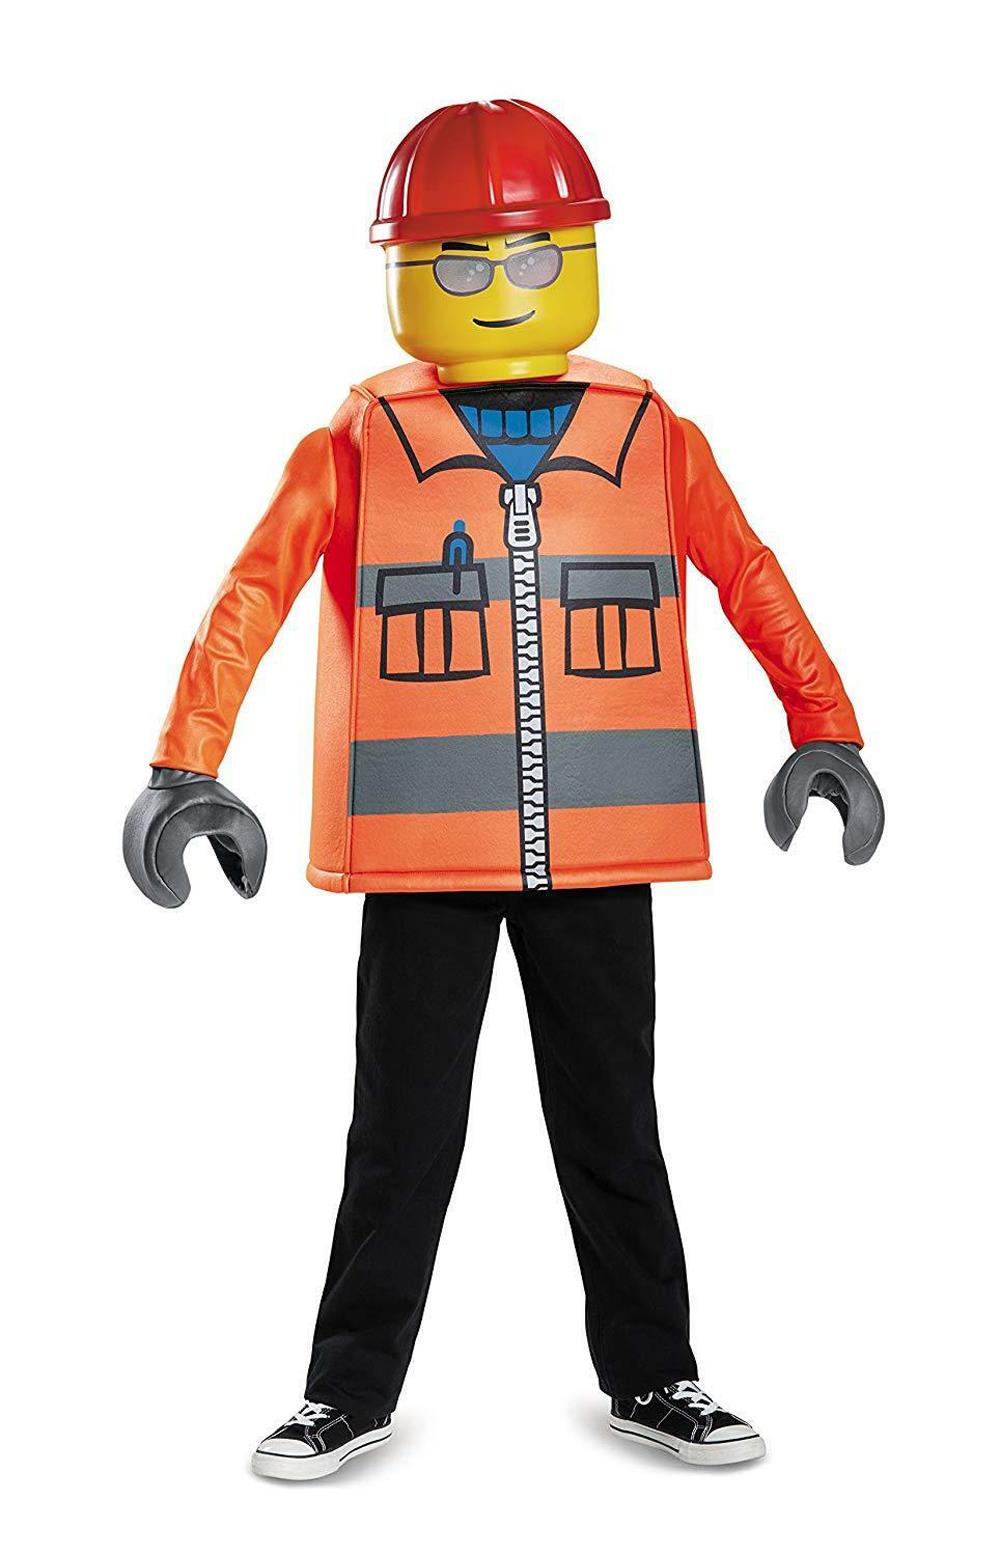 Disguise Classic Lego Construction Costume, Medium 7-8